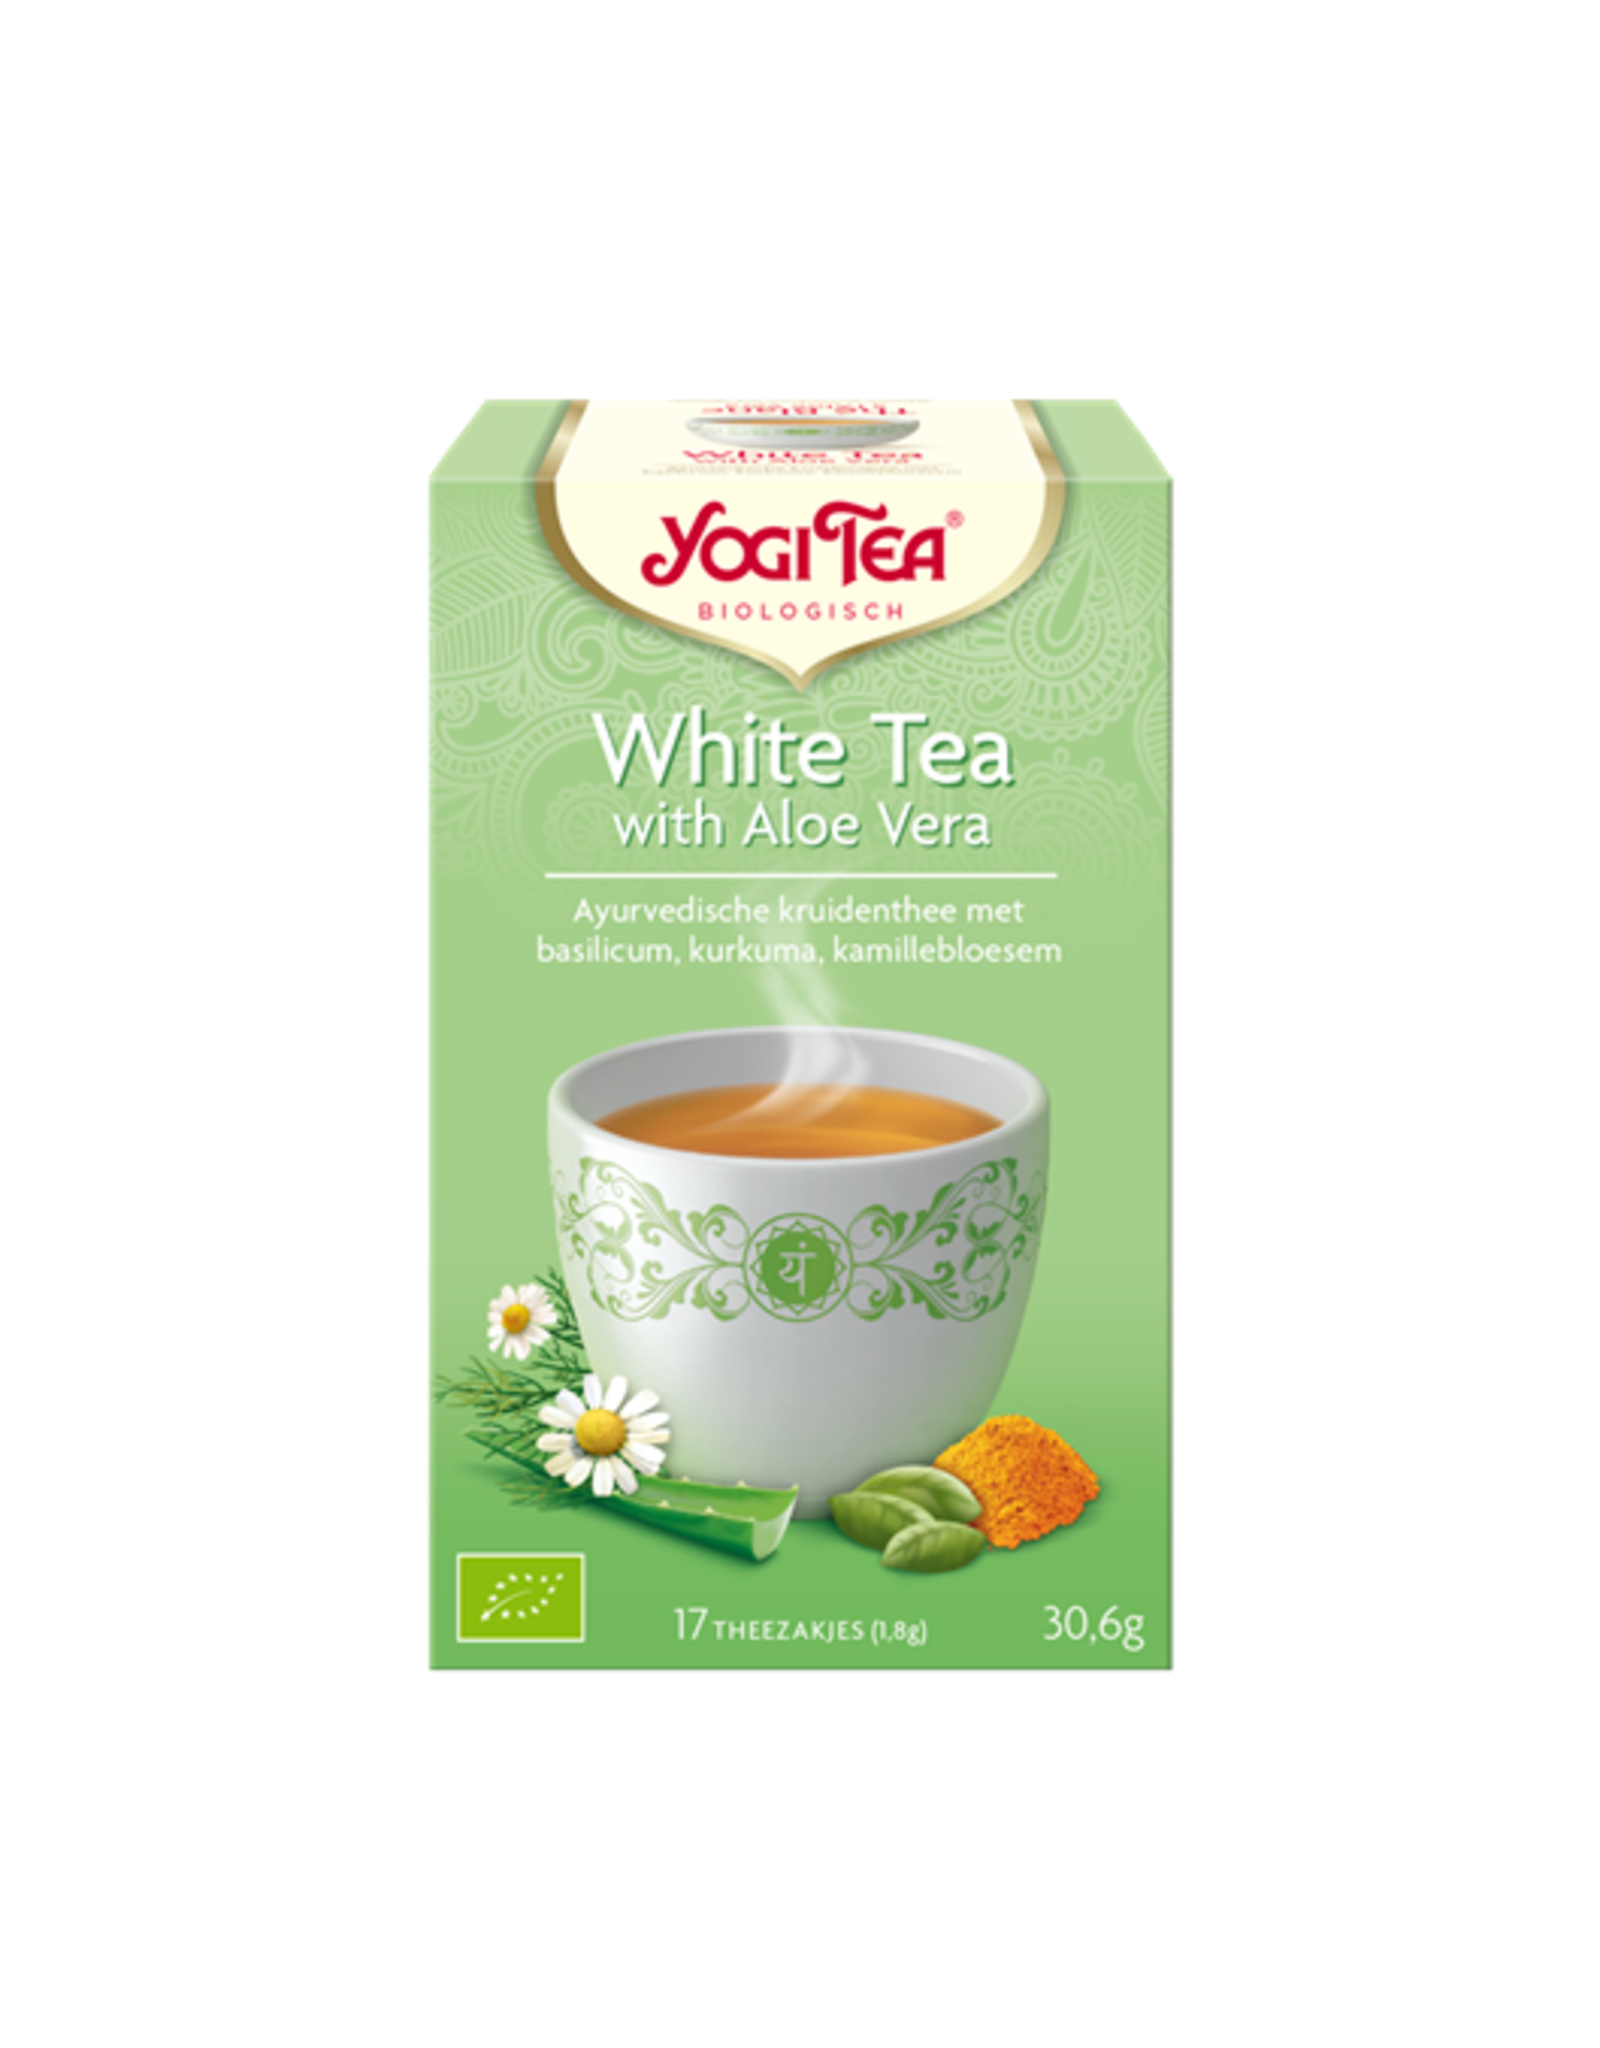 Yogi Tea White Tea